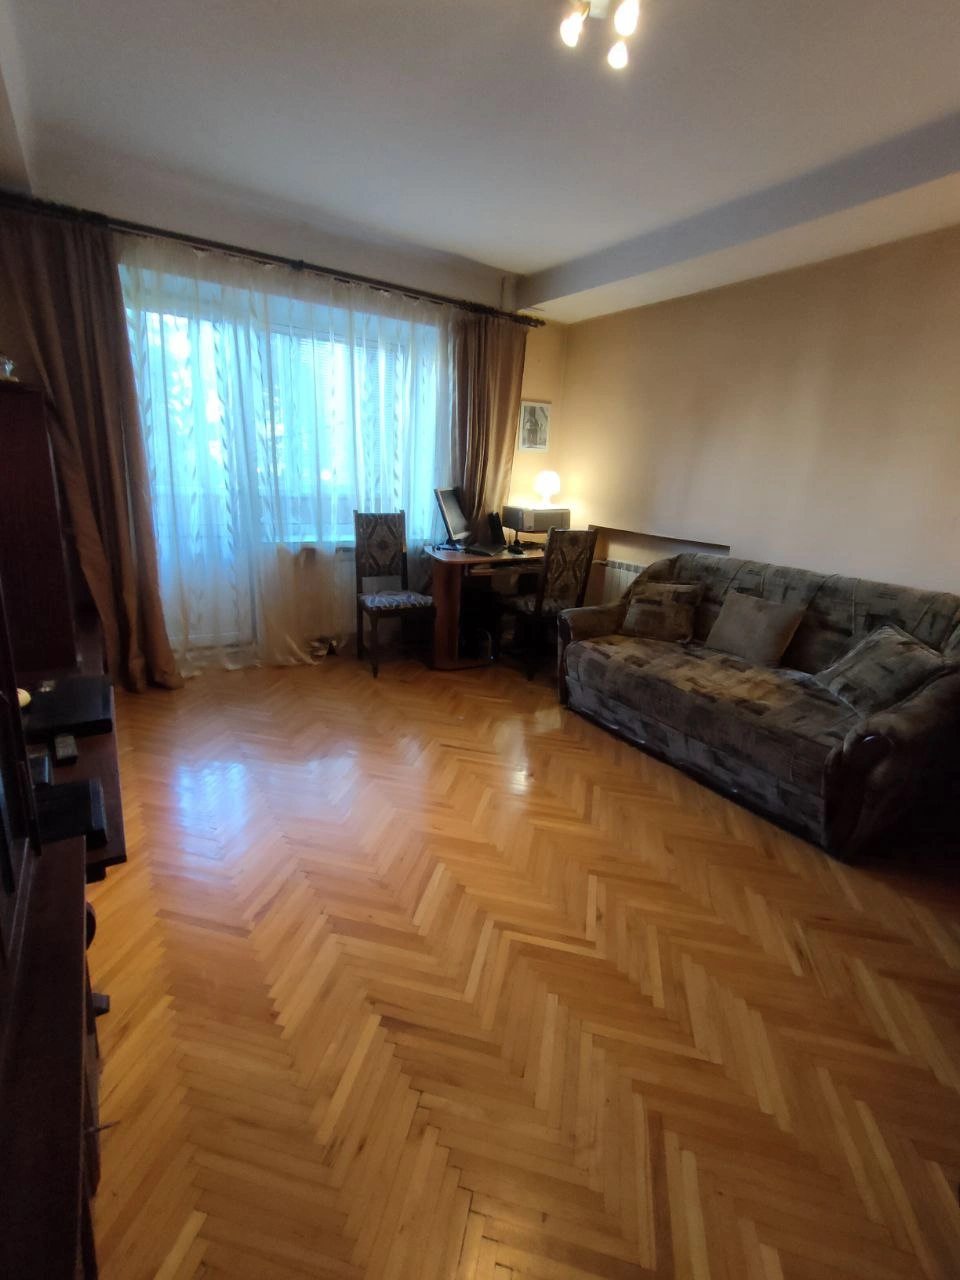 Apartments for sale. 12, Rusanivska Naberezhna 12, Kyiv. 